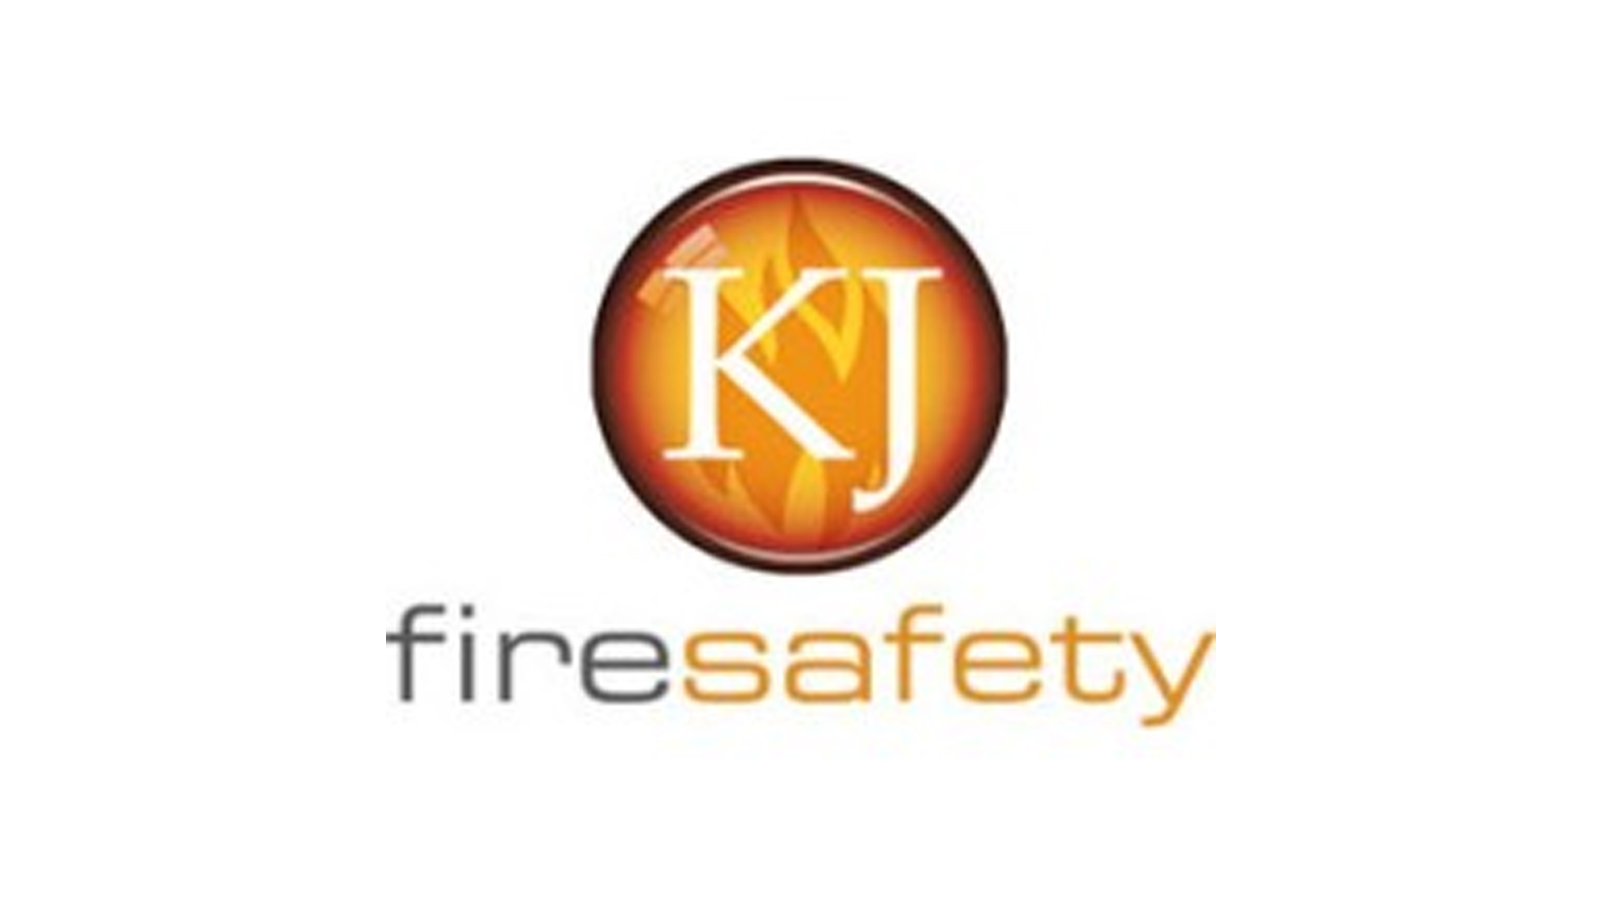 KJ Fire Safety